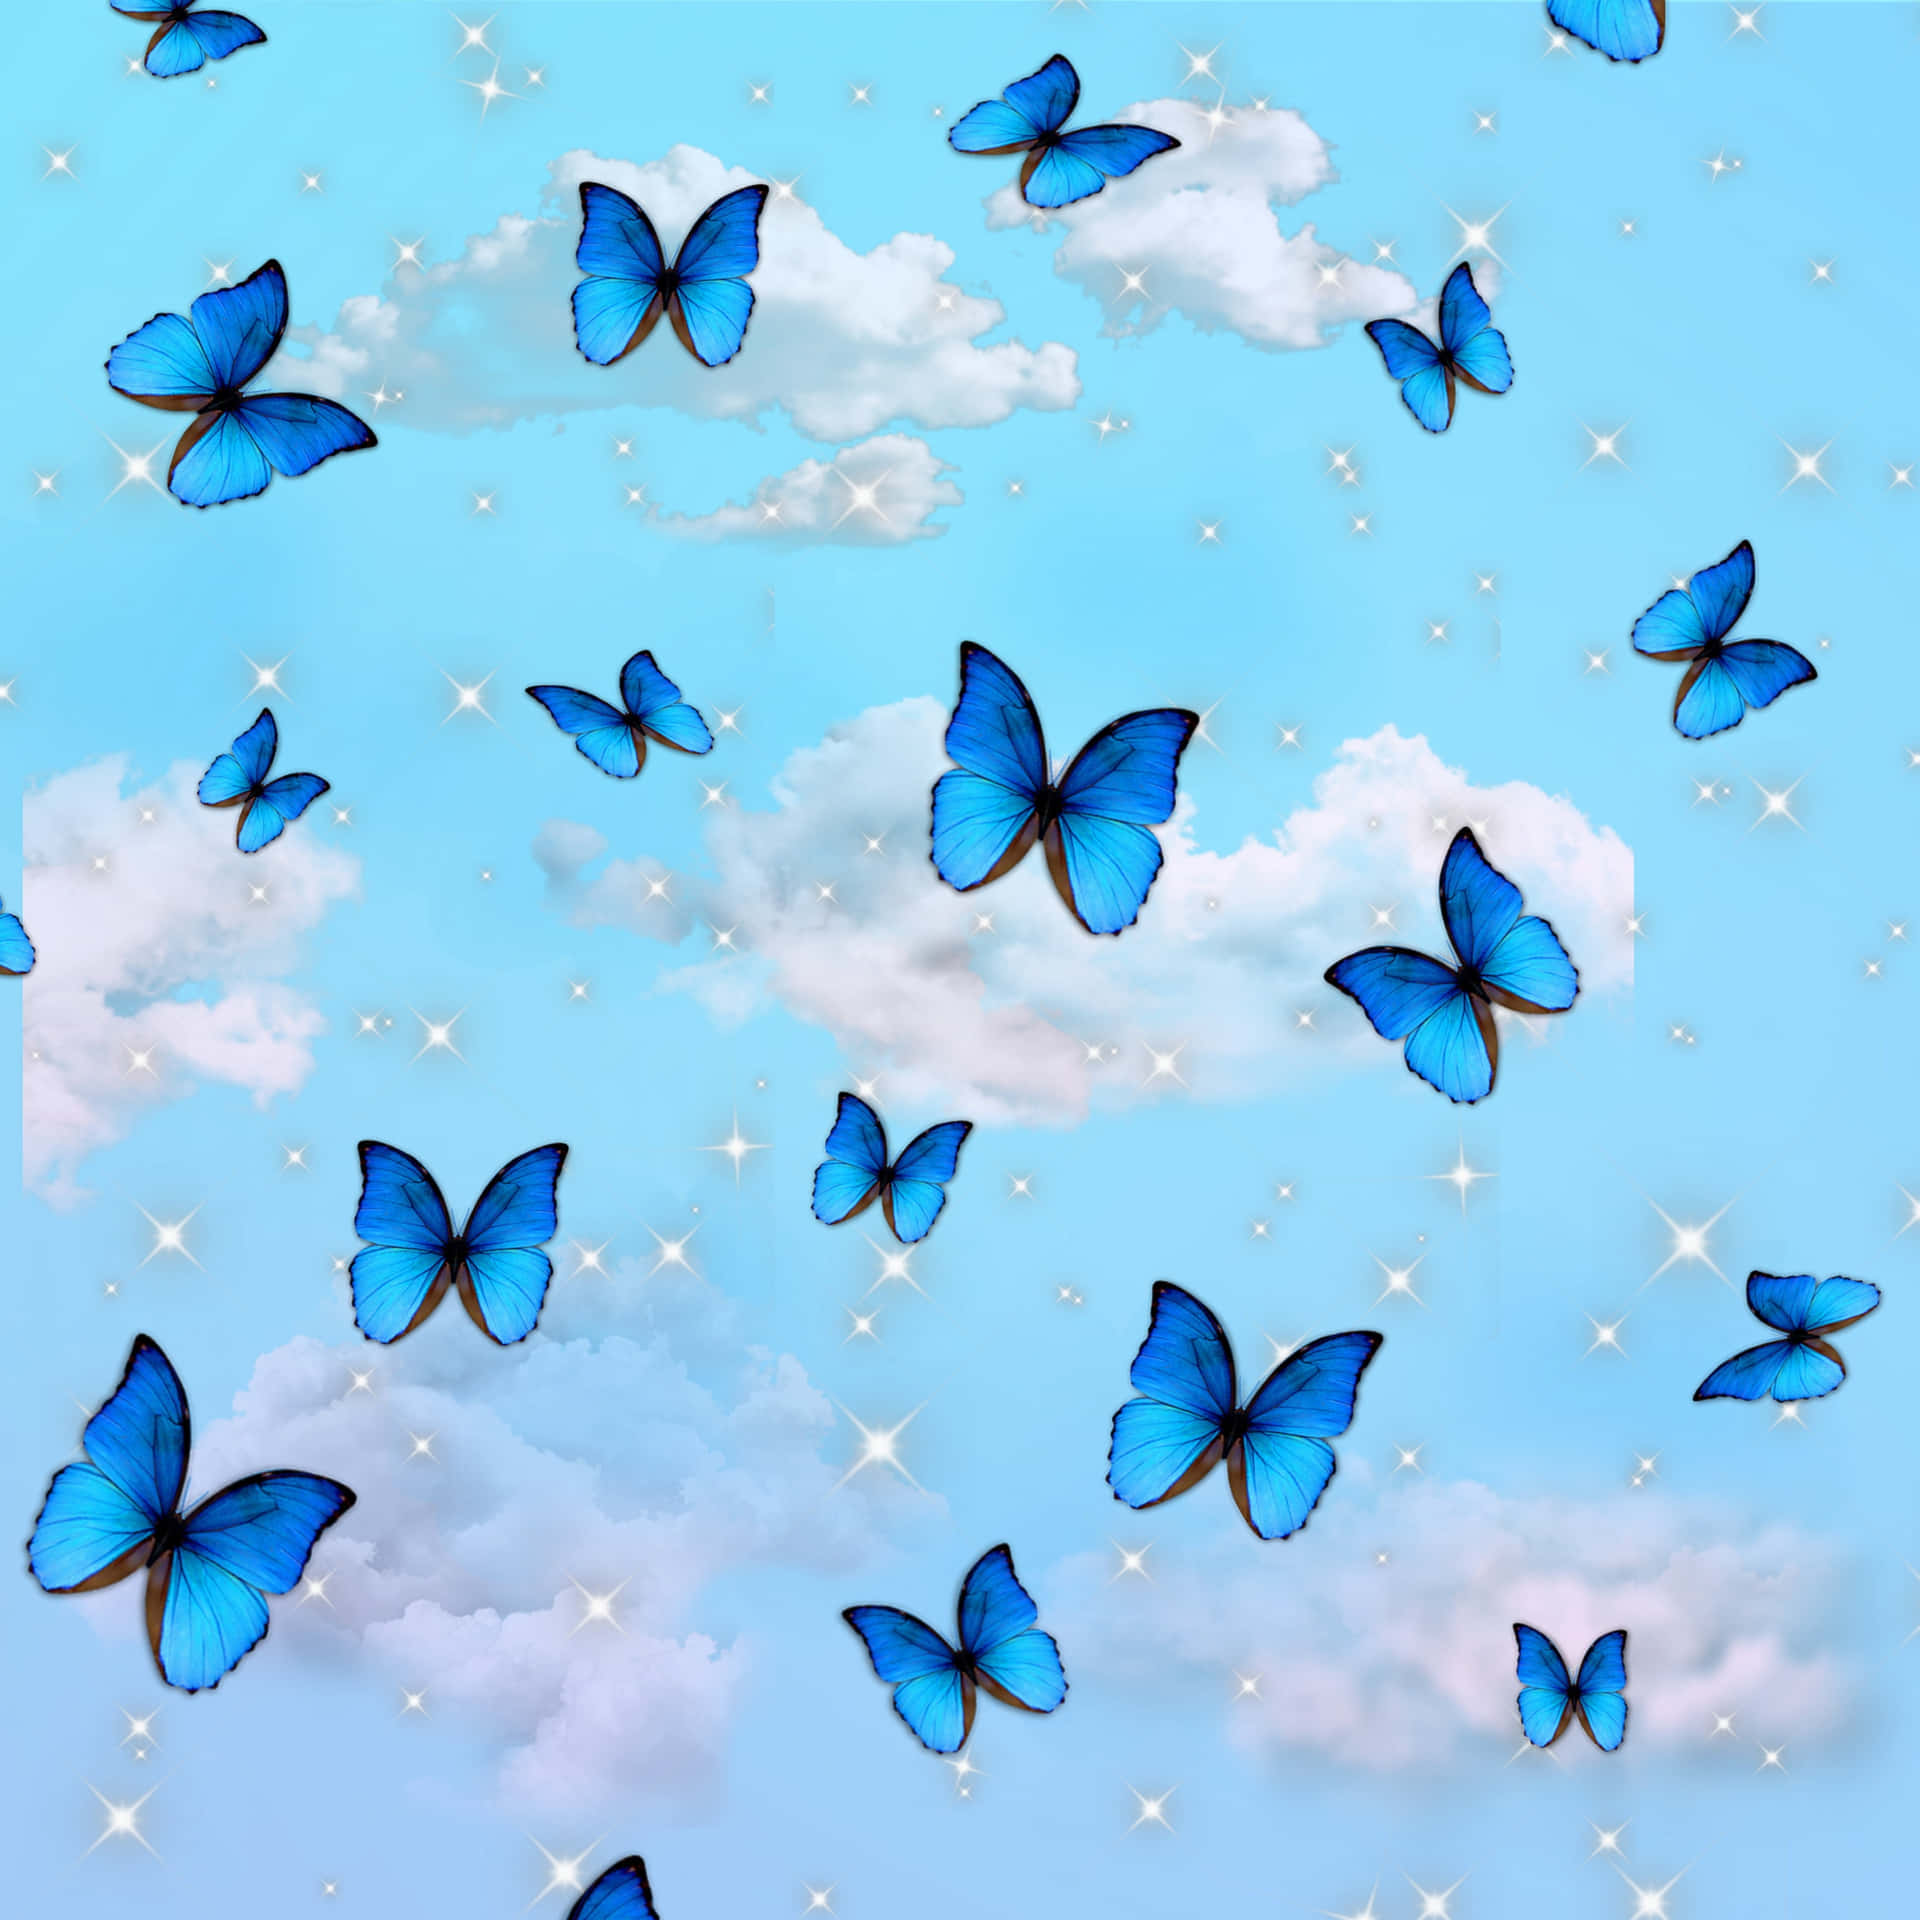 Einblauer Schmetterling Segelt Über Einen Ruhigen Sommerhimmel.